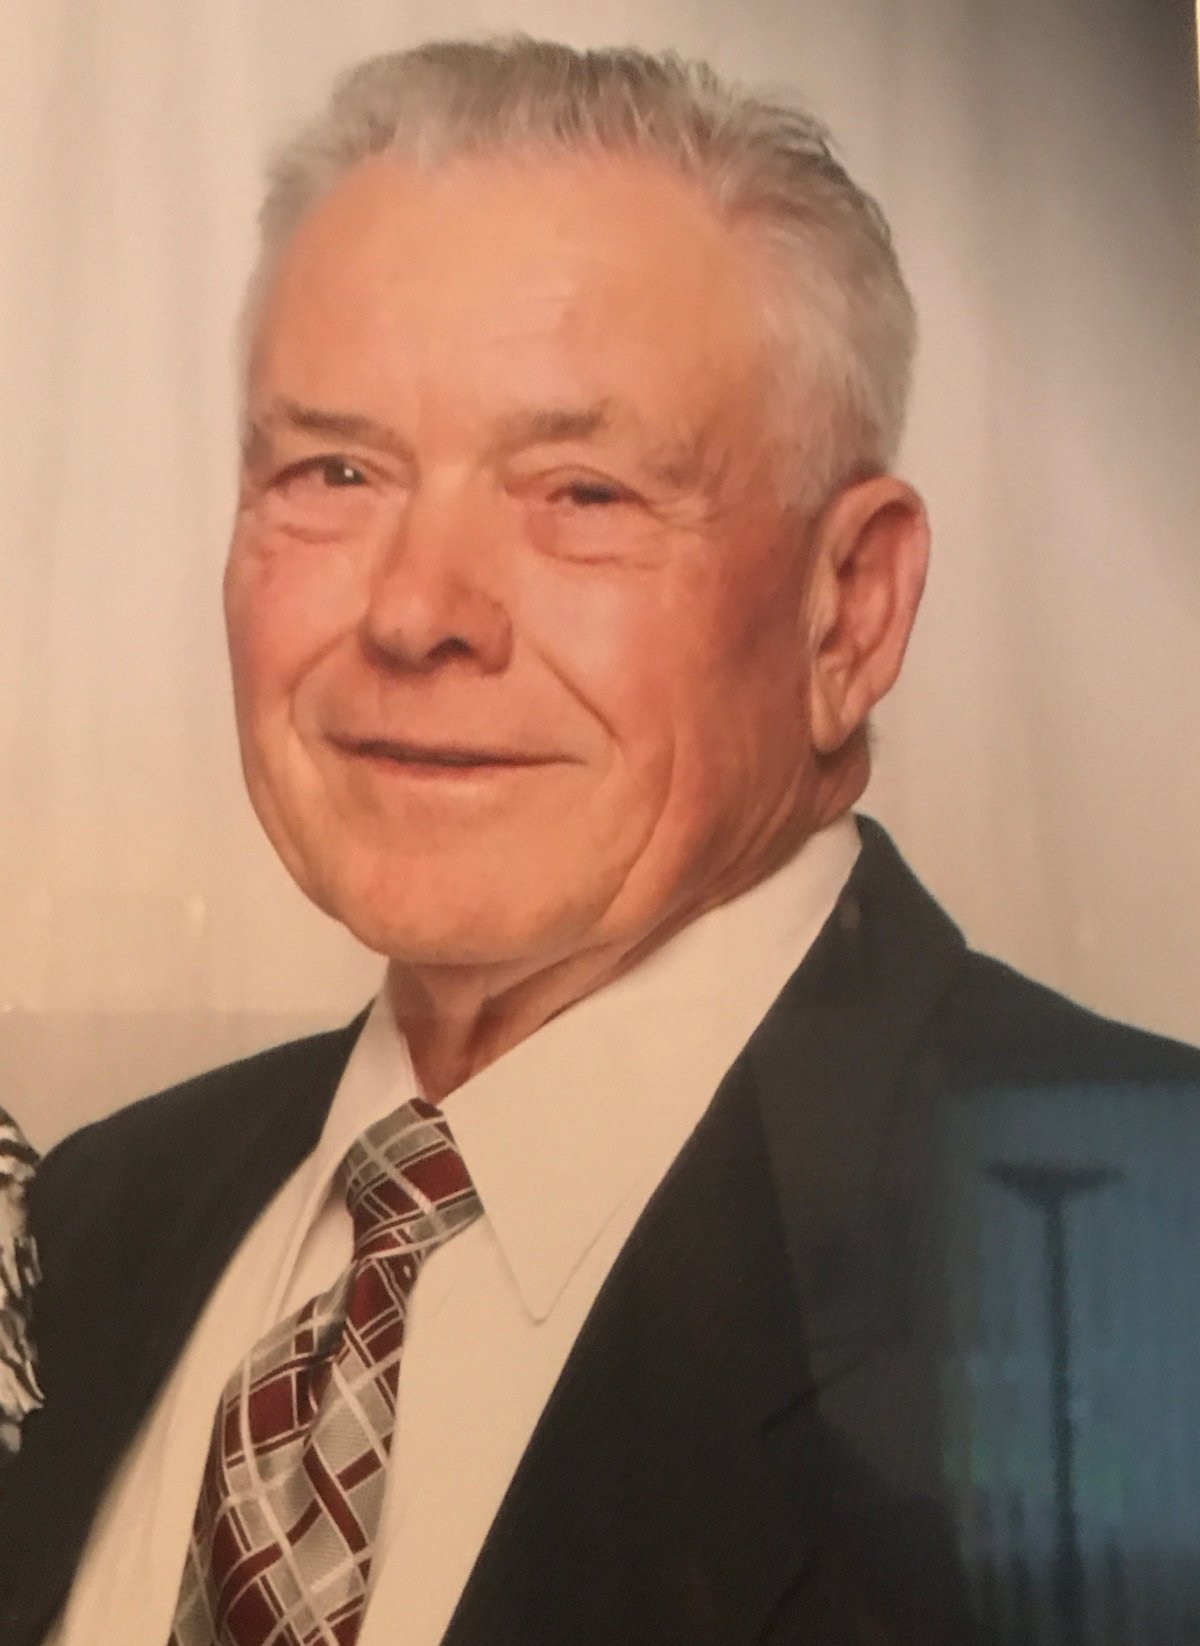 Surrey RCMP say 84-year-old Heinrich Derksen has been found safe - image